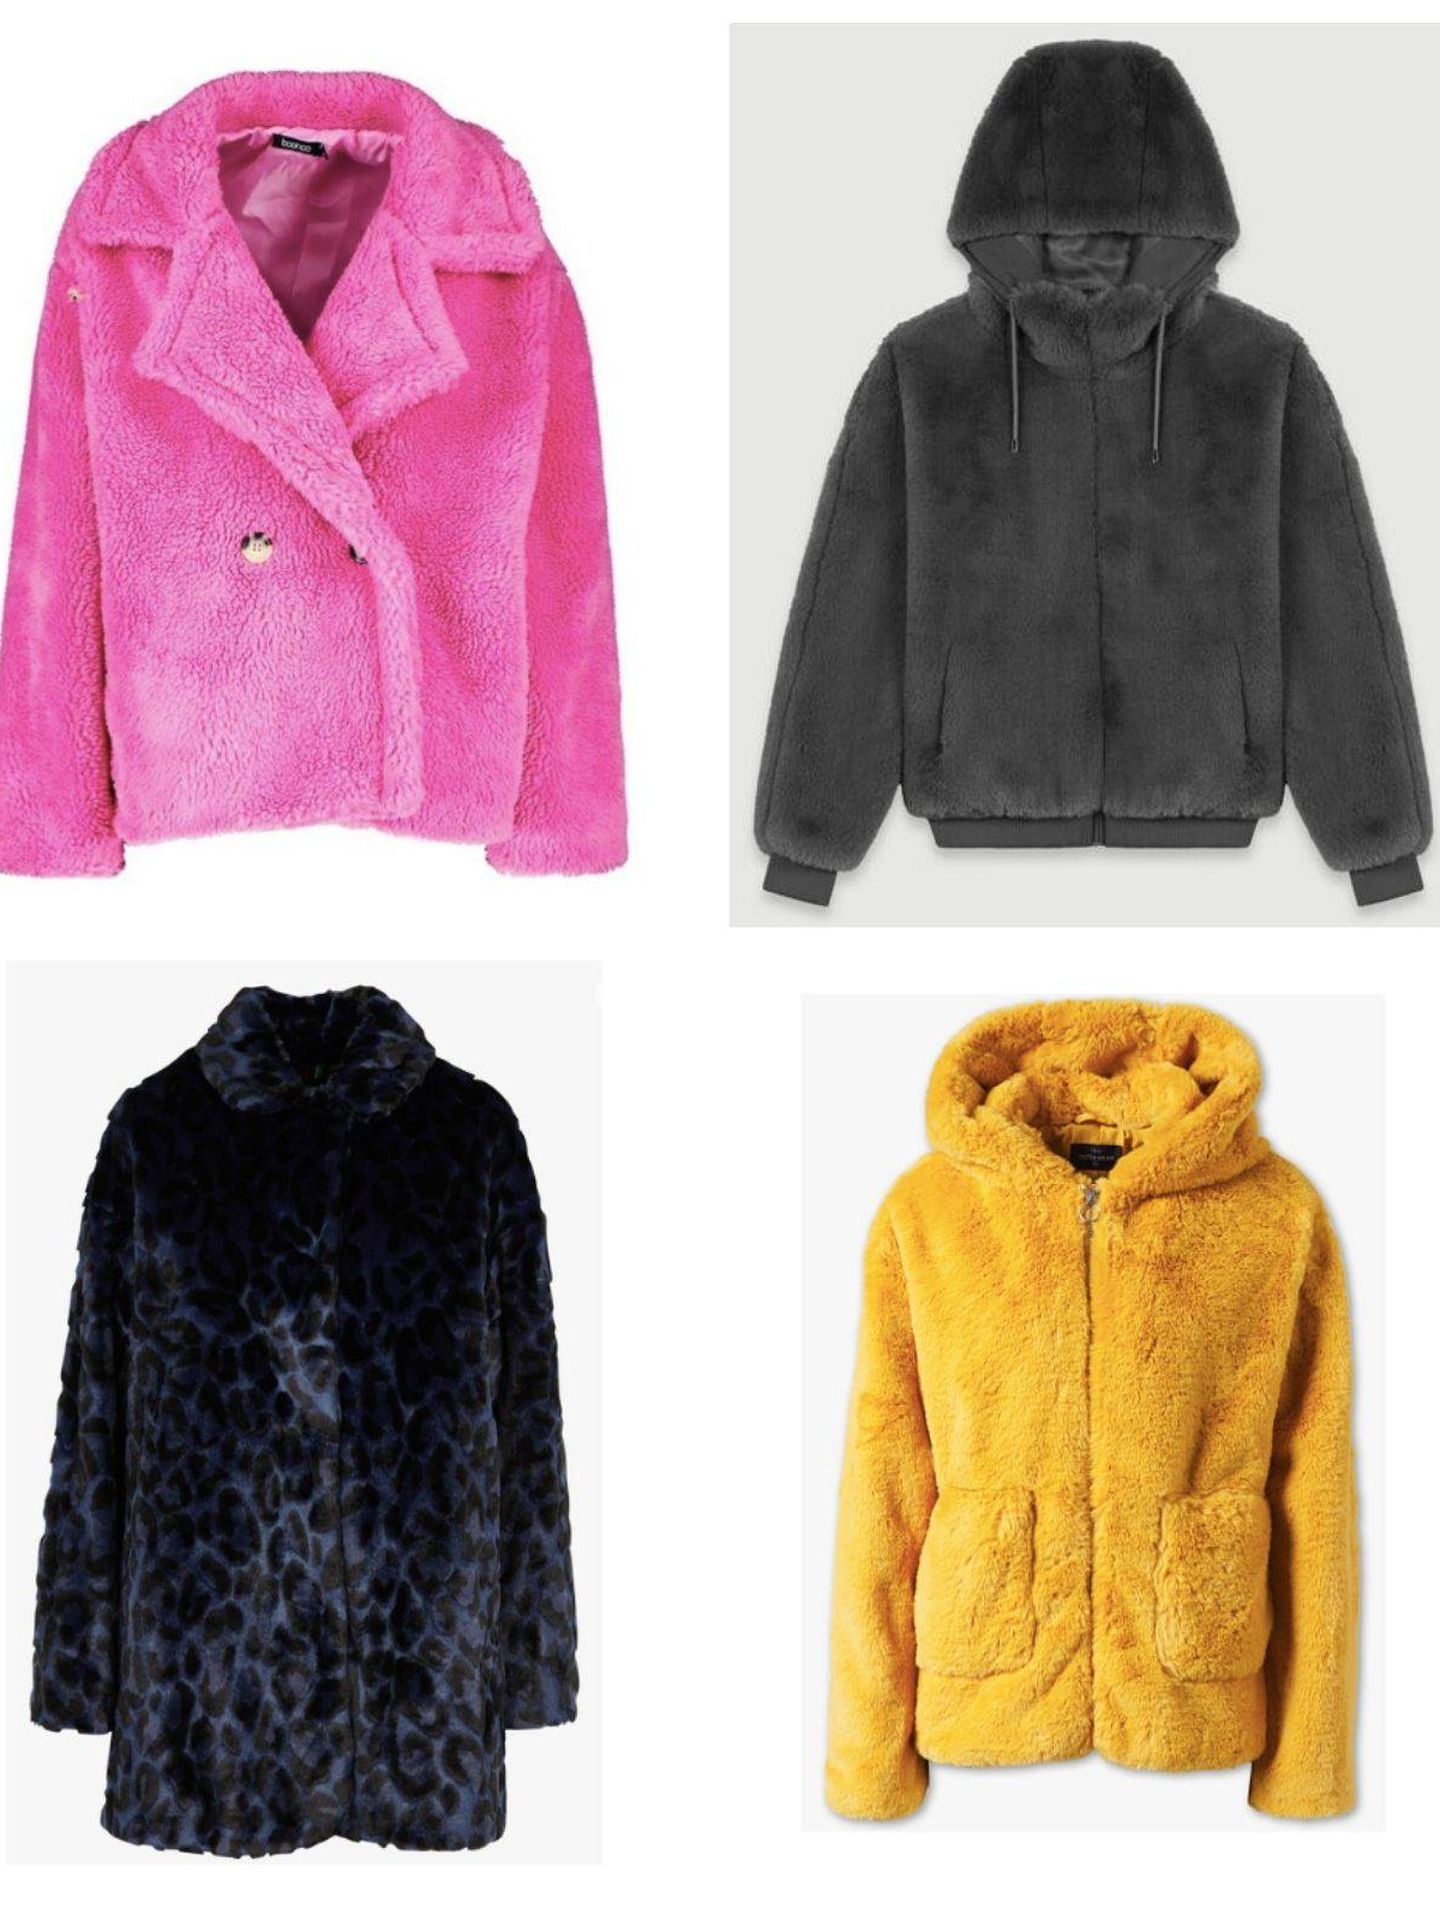 Diferentes diseños y colores en tu abrigo de pelo.